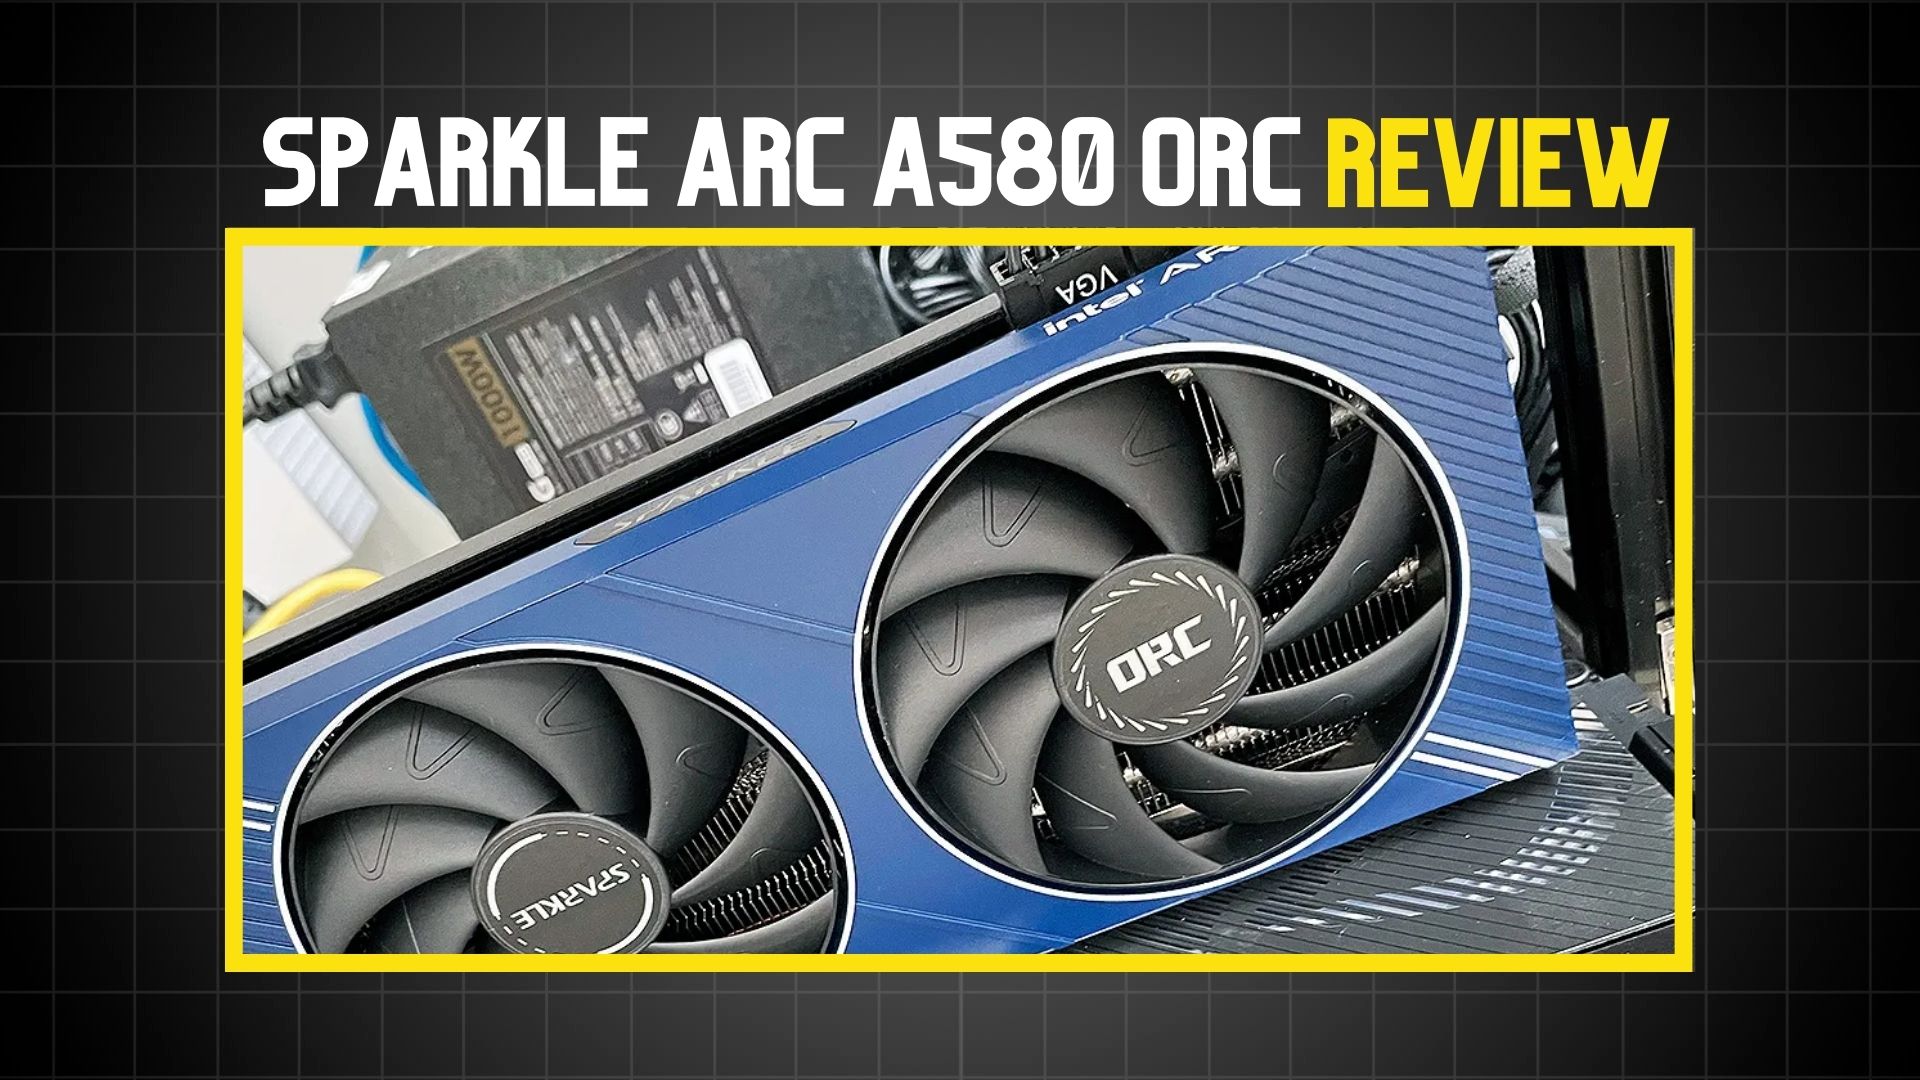 Sparkle Arc A580 Orc Review